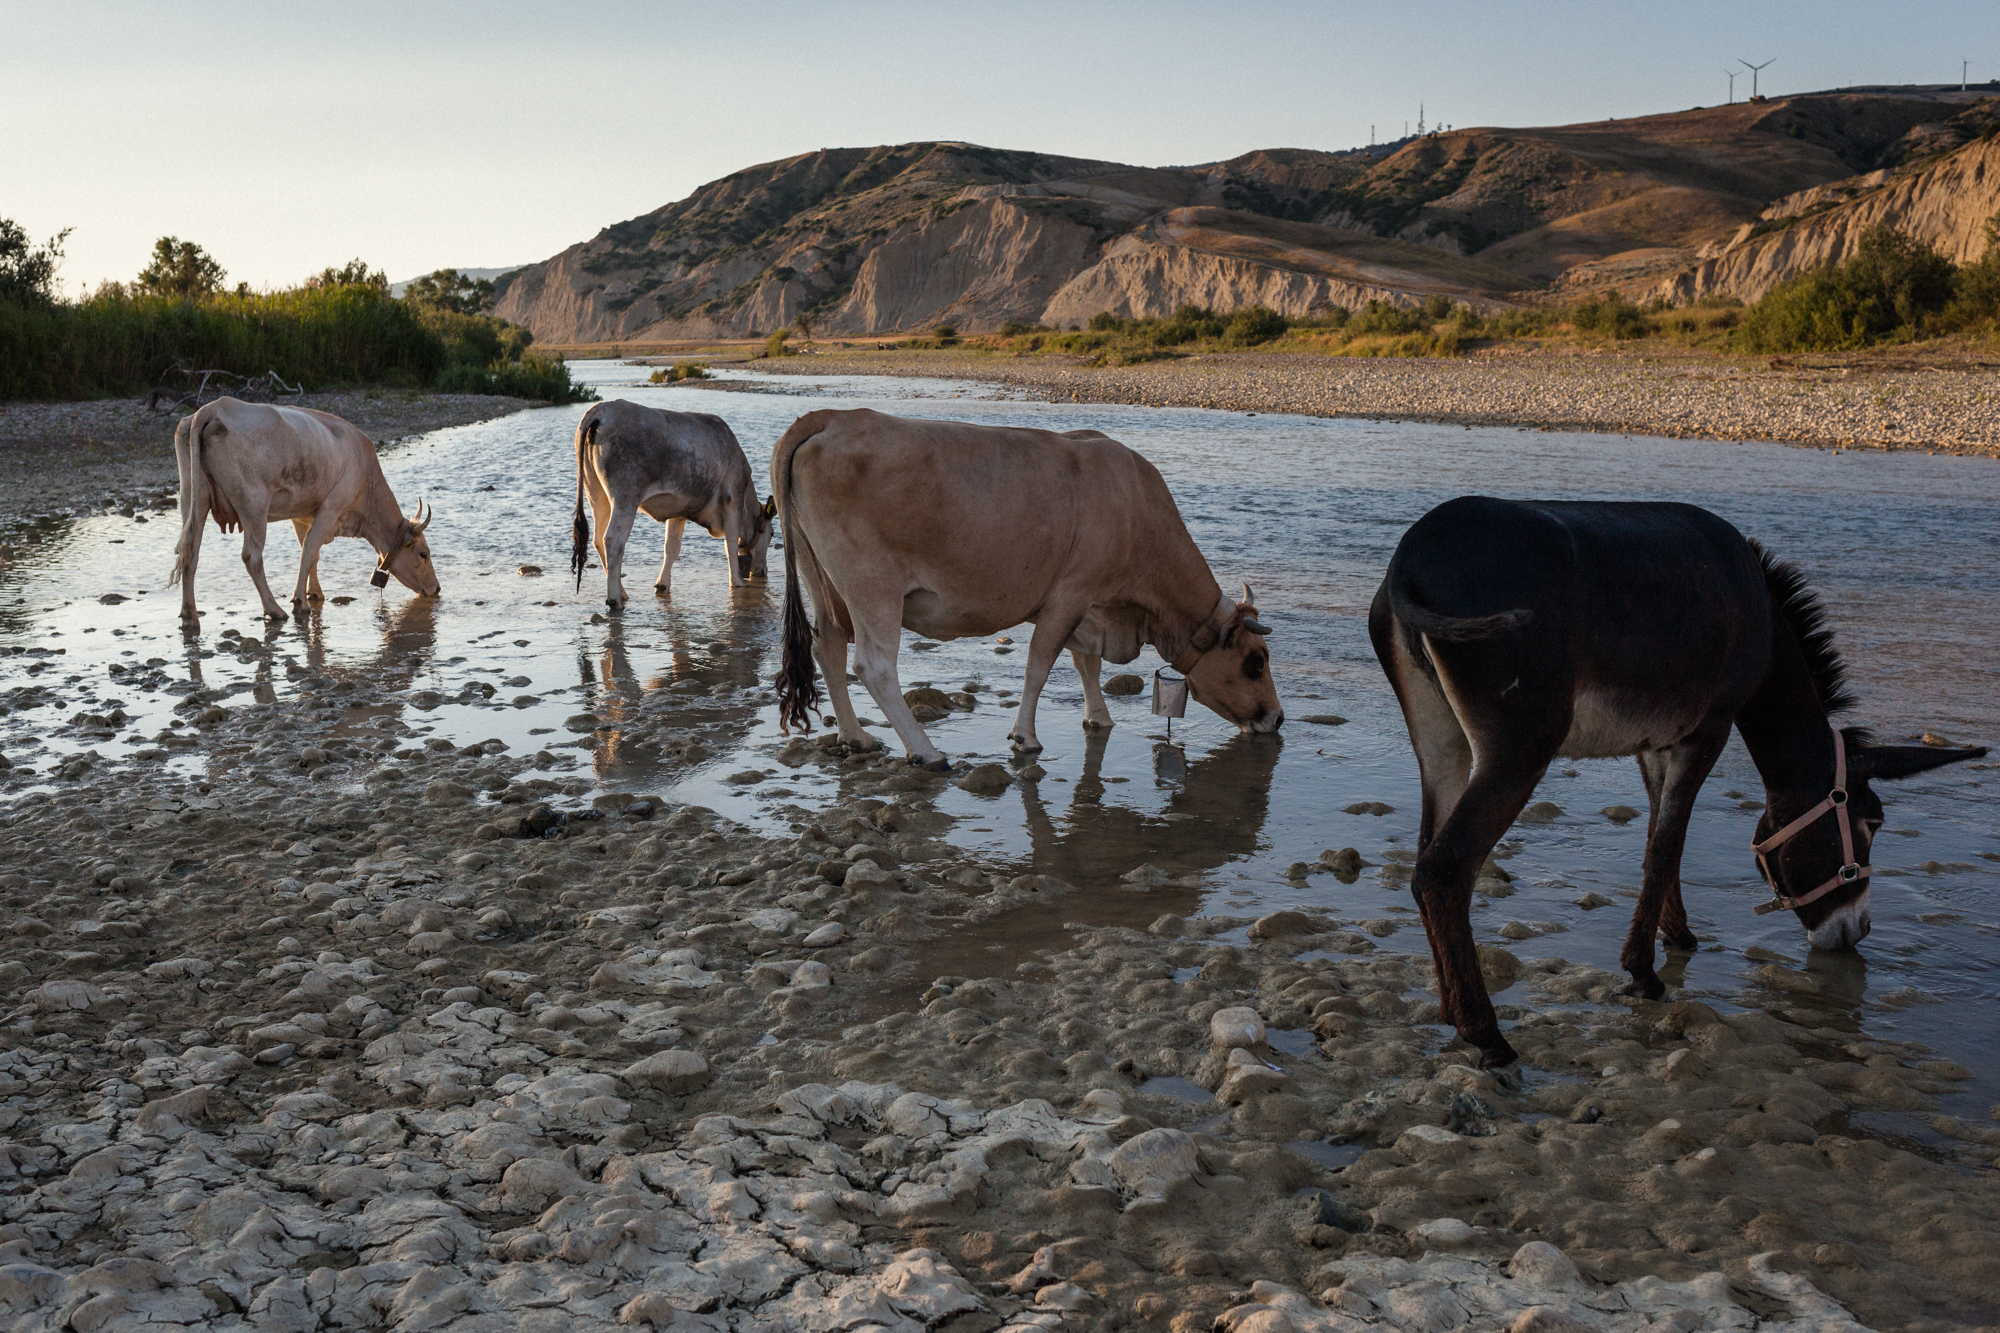  Mucche podoliche si abbeverano lungo il fiume Basento, in zona Ferrandina (MT), 2015. Nel 2013, i sindaci di Pisticci e Ferrandina, sollecitati dall’Asm (Dipartimento prevenzione collettiva della salute umana), hanno emesso con ordinanza che vieta “